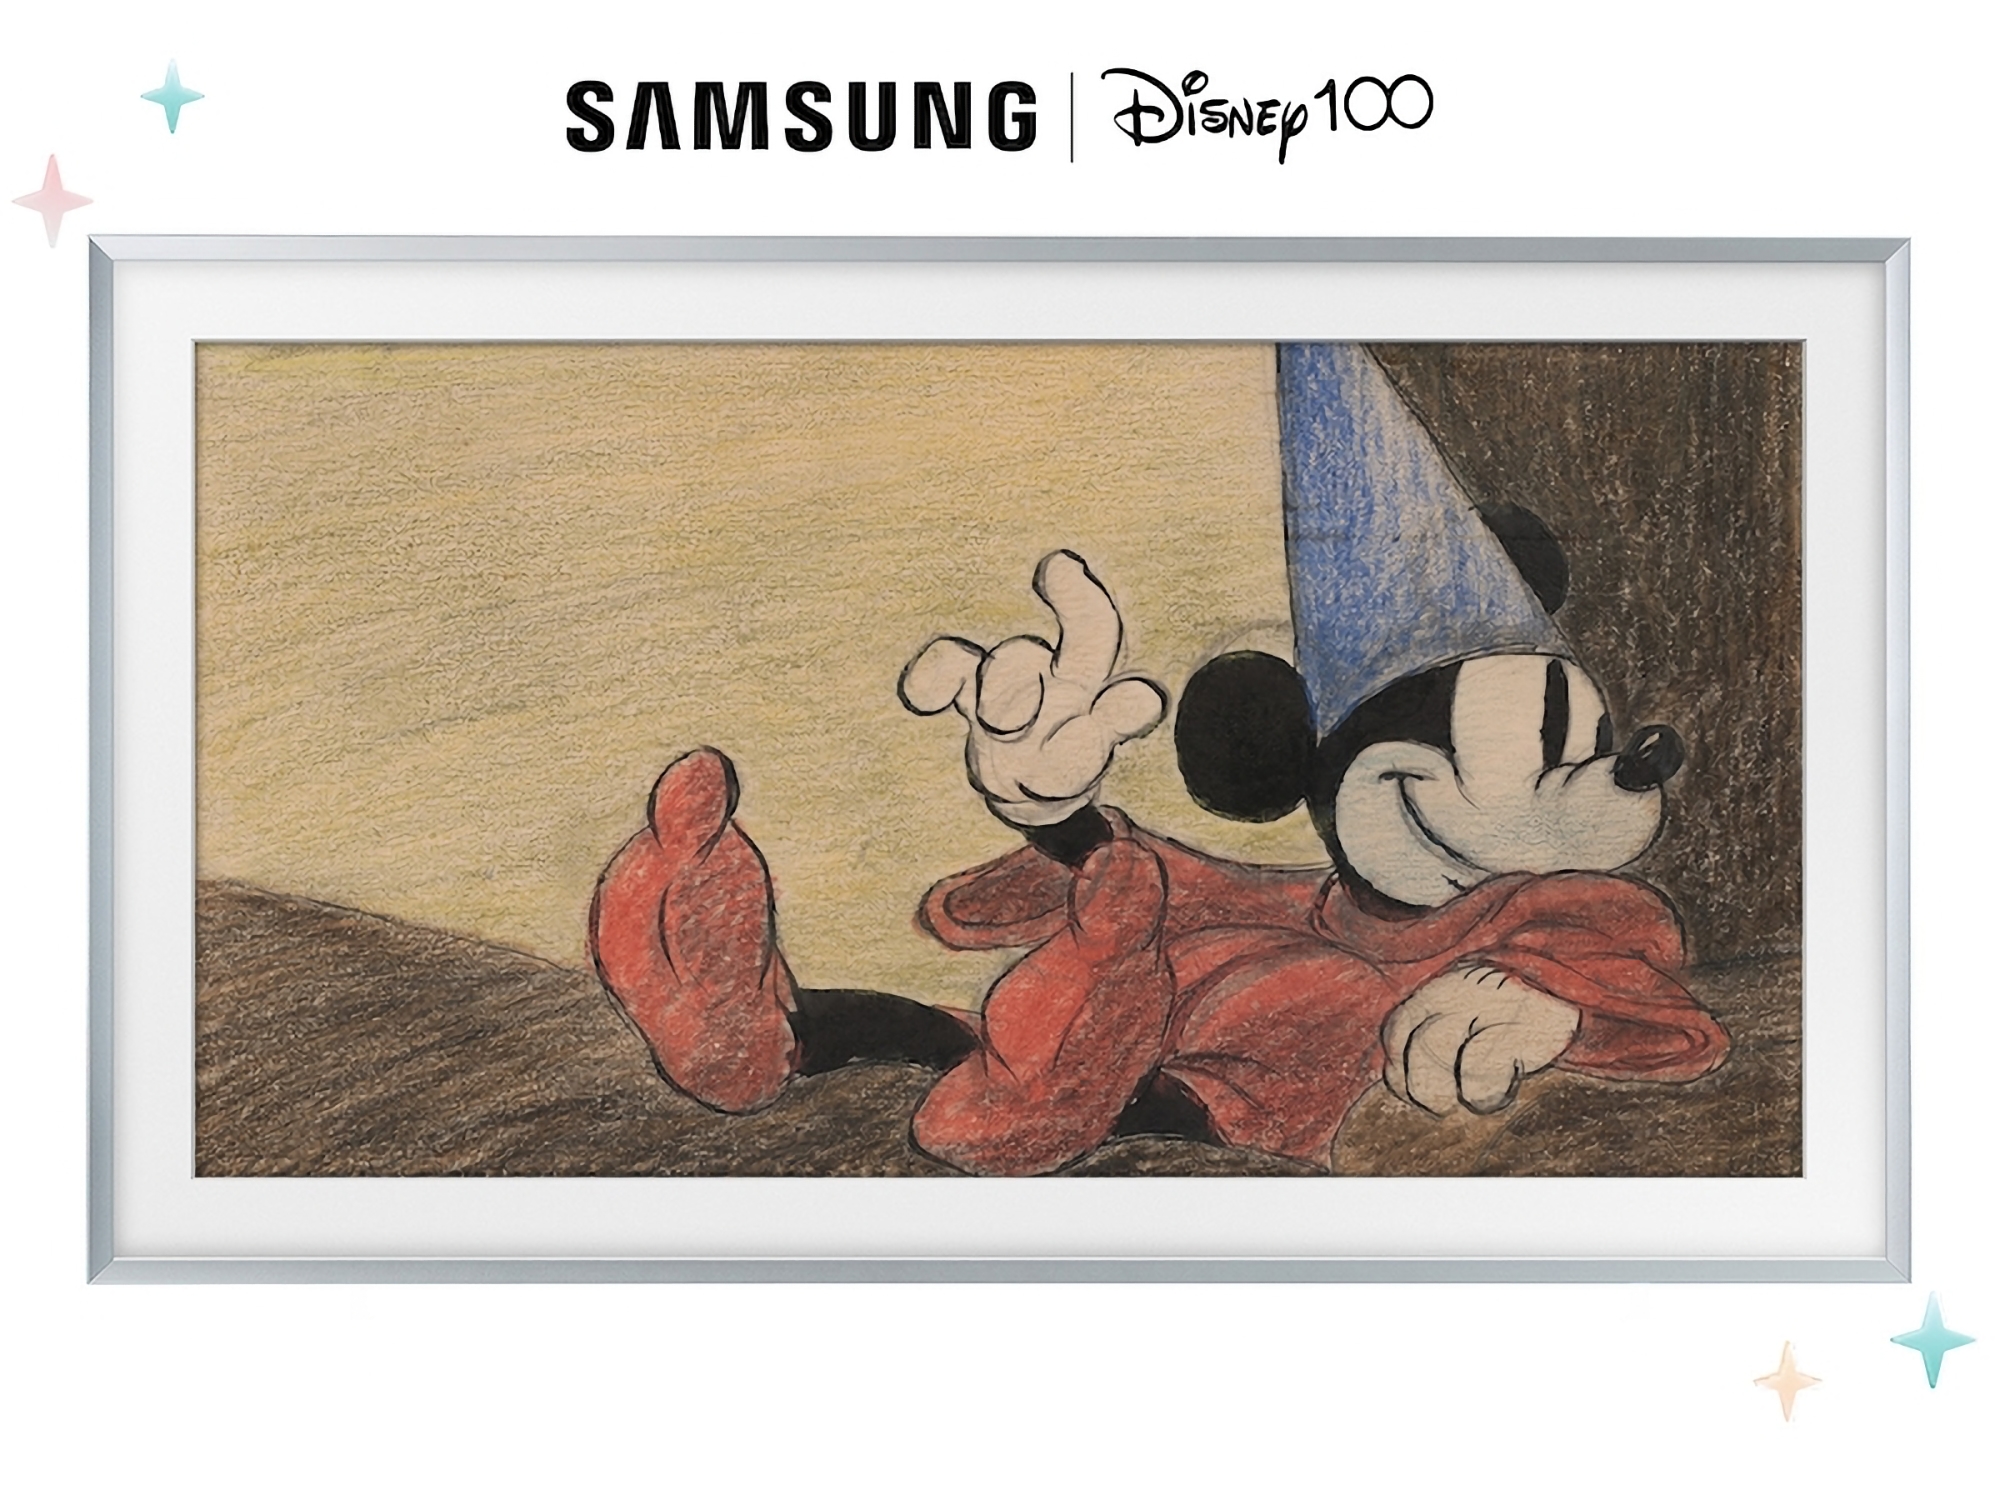 Samsung har afsløret en begrænset udgave af Frame TV-serien for at fejre The Walt Disney Companys 100-års jubilæum.